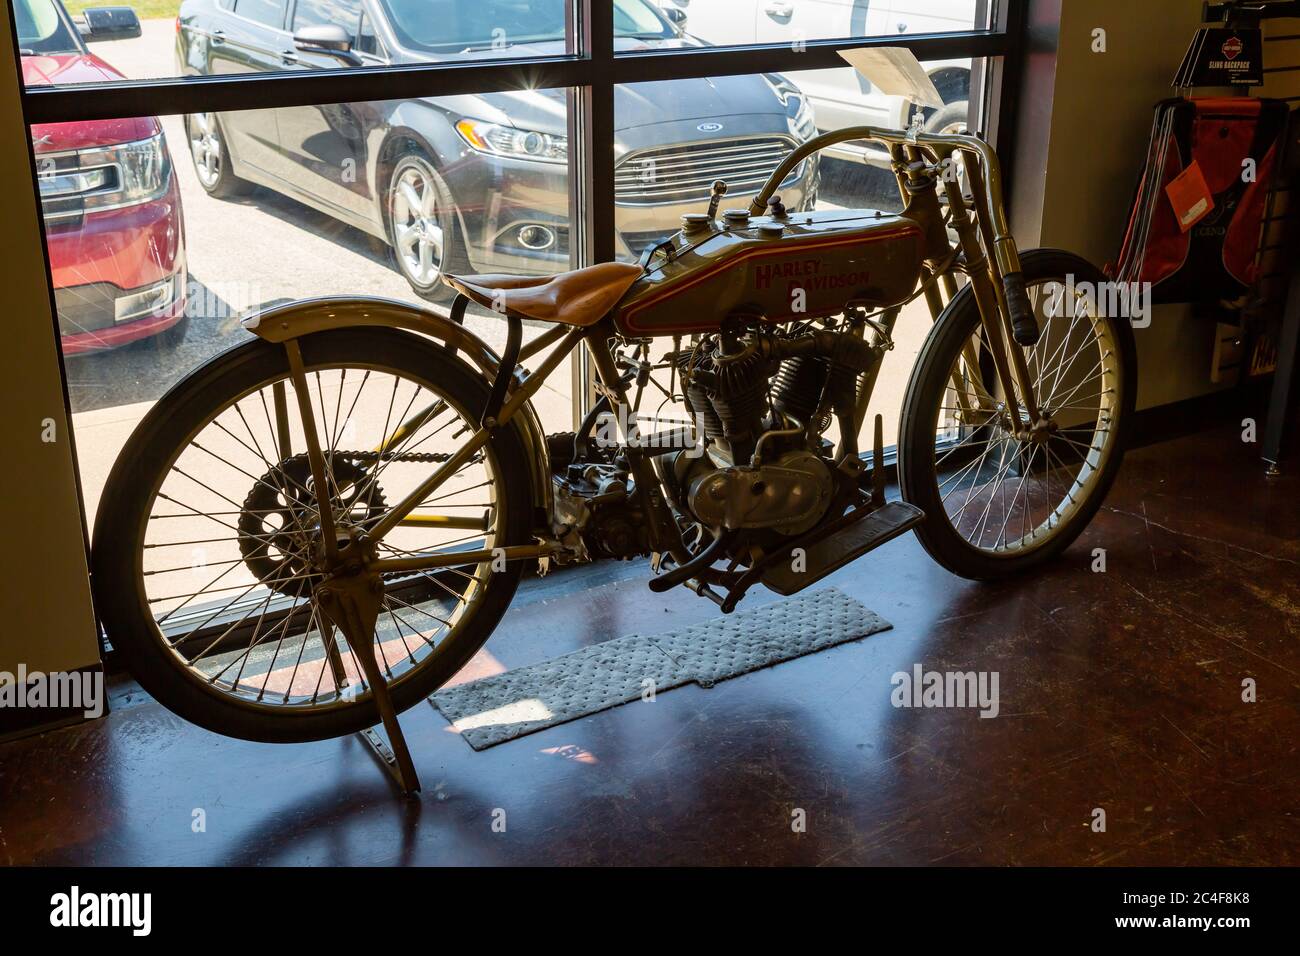 Un ancien vélo de course Harley Davidson se trouve dans la salle d'exposition du concessionnaire de motos I-69 Harley Davidson de Brandt à Marion, Indiana, États-Unis. Banque D'Images